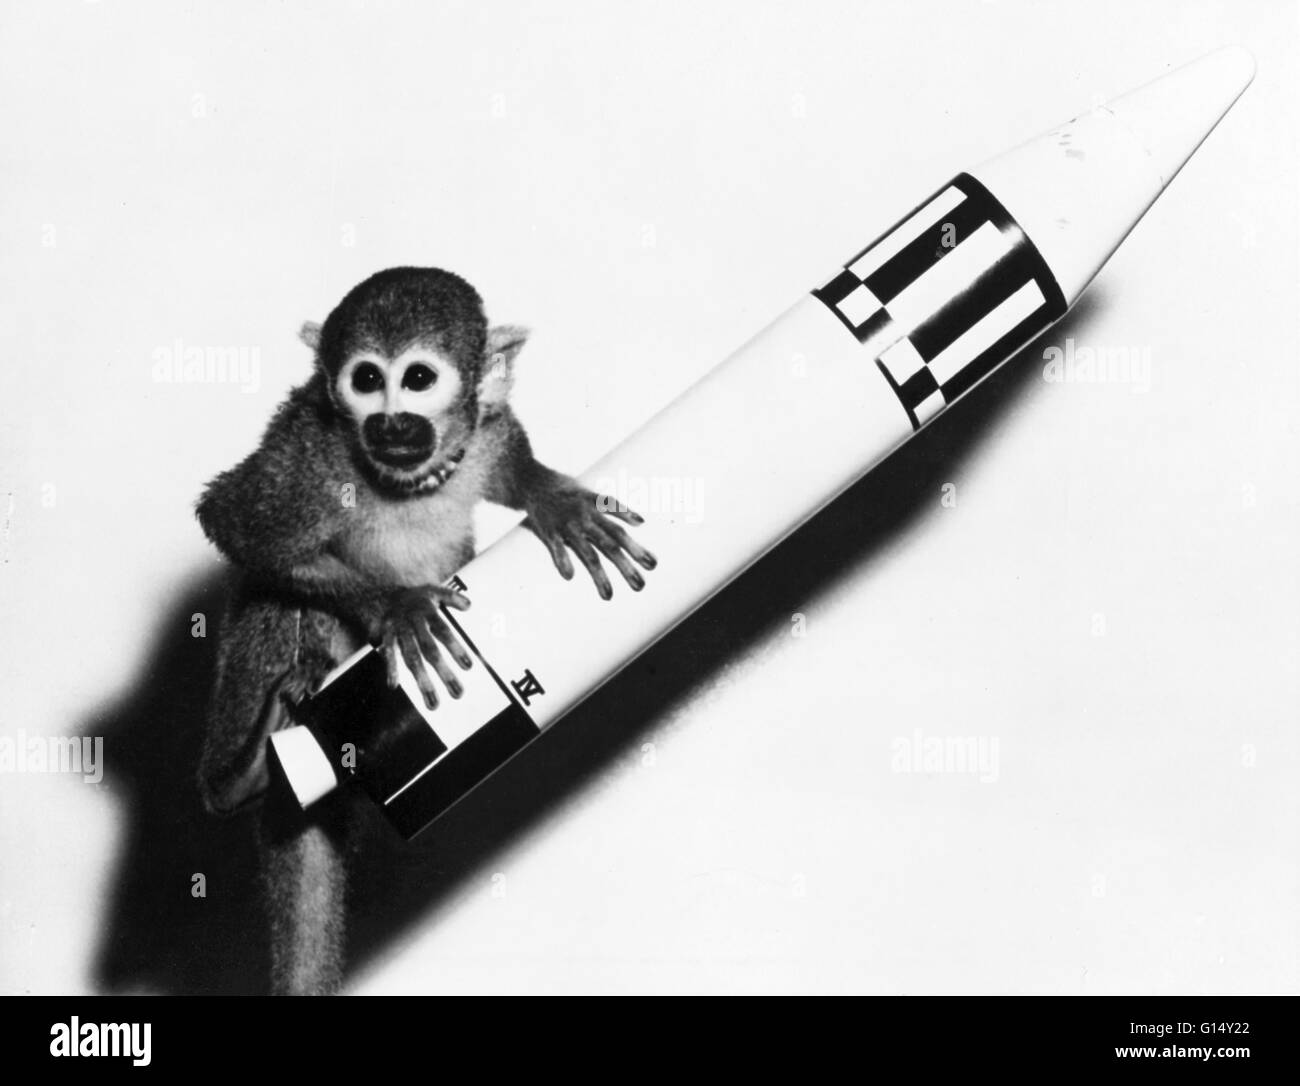 Mme Baker (1957 - 29 novembre 1984) était un singe-écureuil qui est devenu, avec Mlle de singe rhésus en mesure, l'un des deux premiers animaux lancé dans l'espace par les États-Unis et de les récupérer en vie. Mme Baker portait un casque minuscule bordée de caoutchouc et cham Banque D'Images